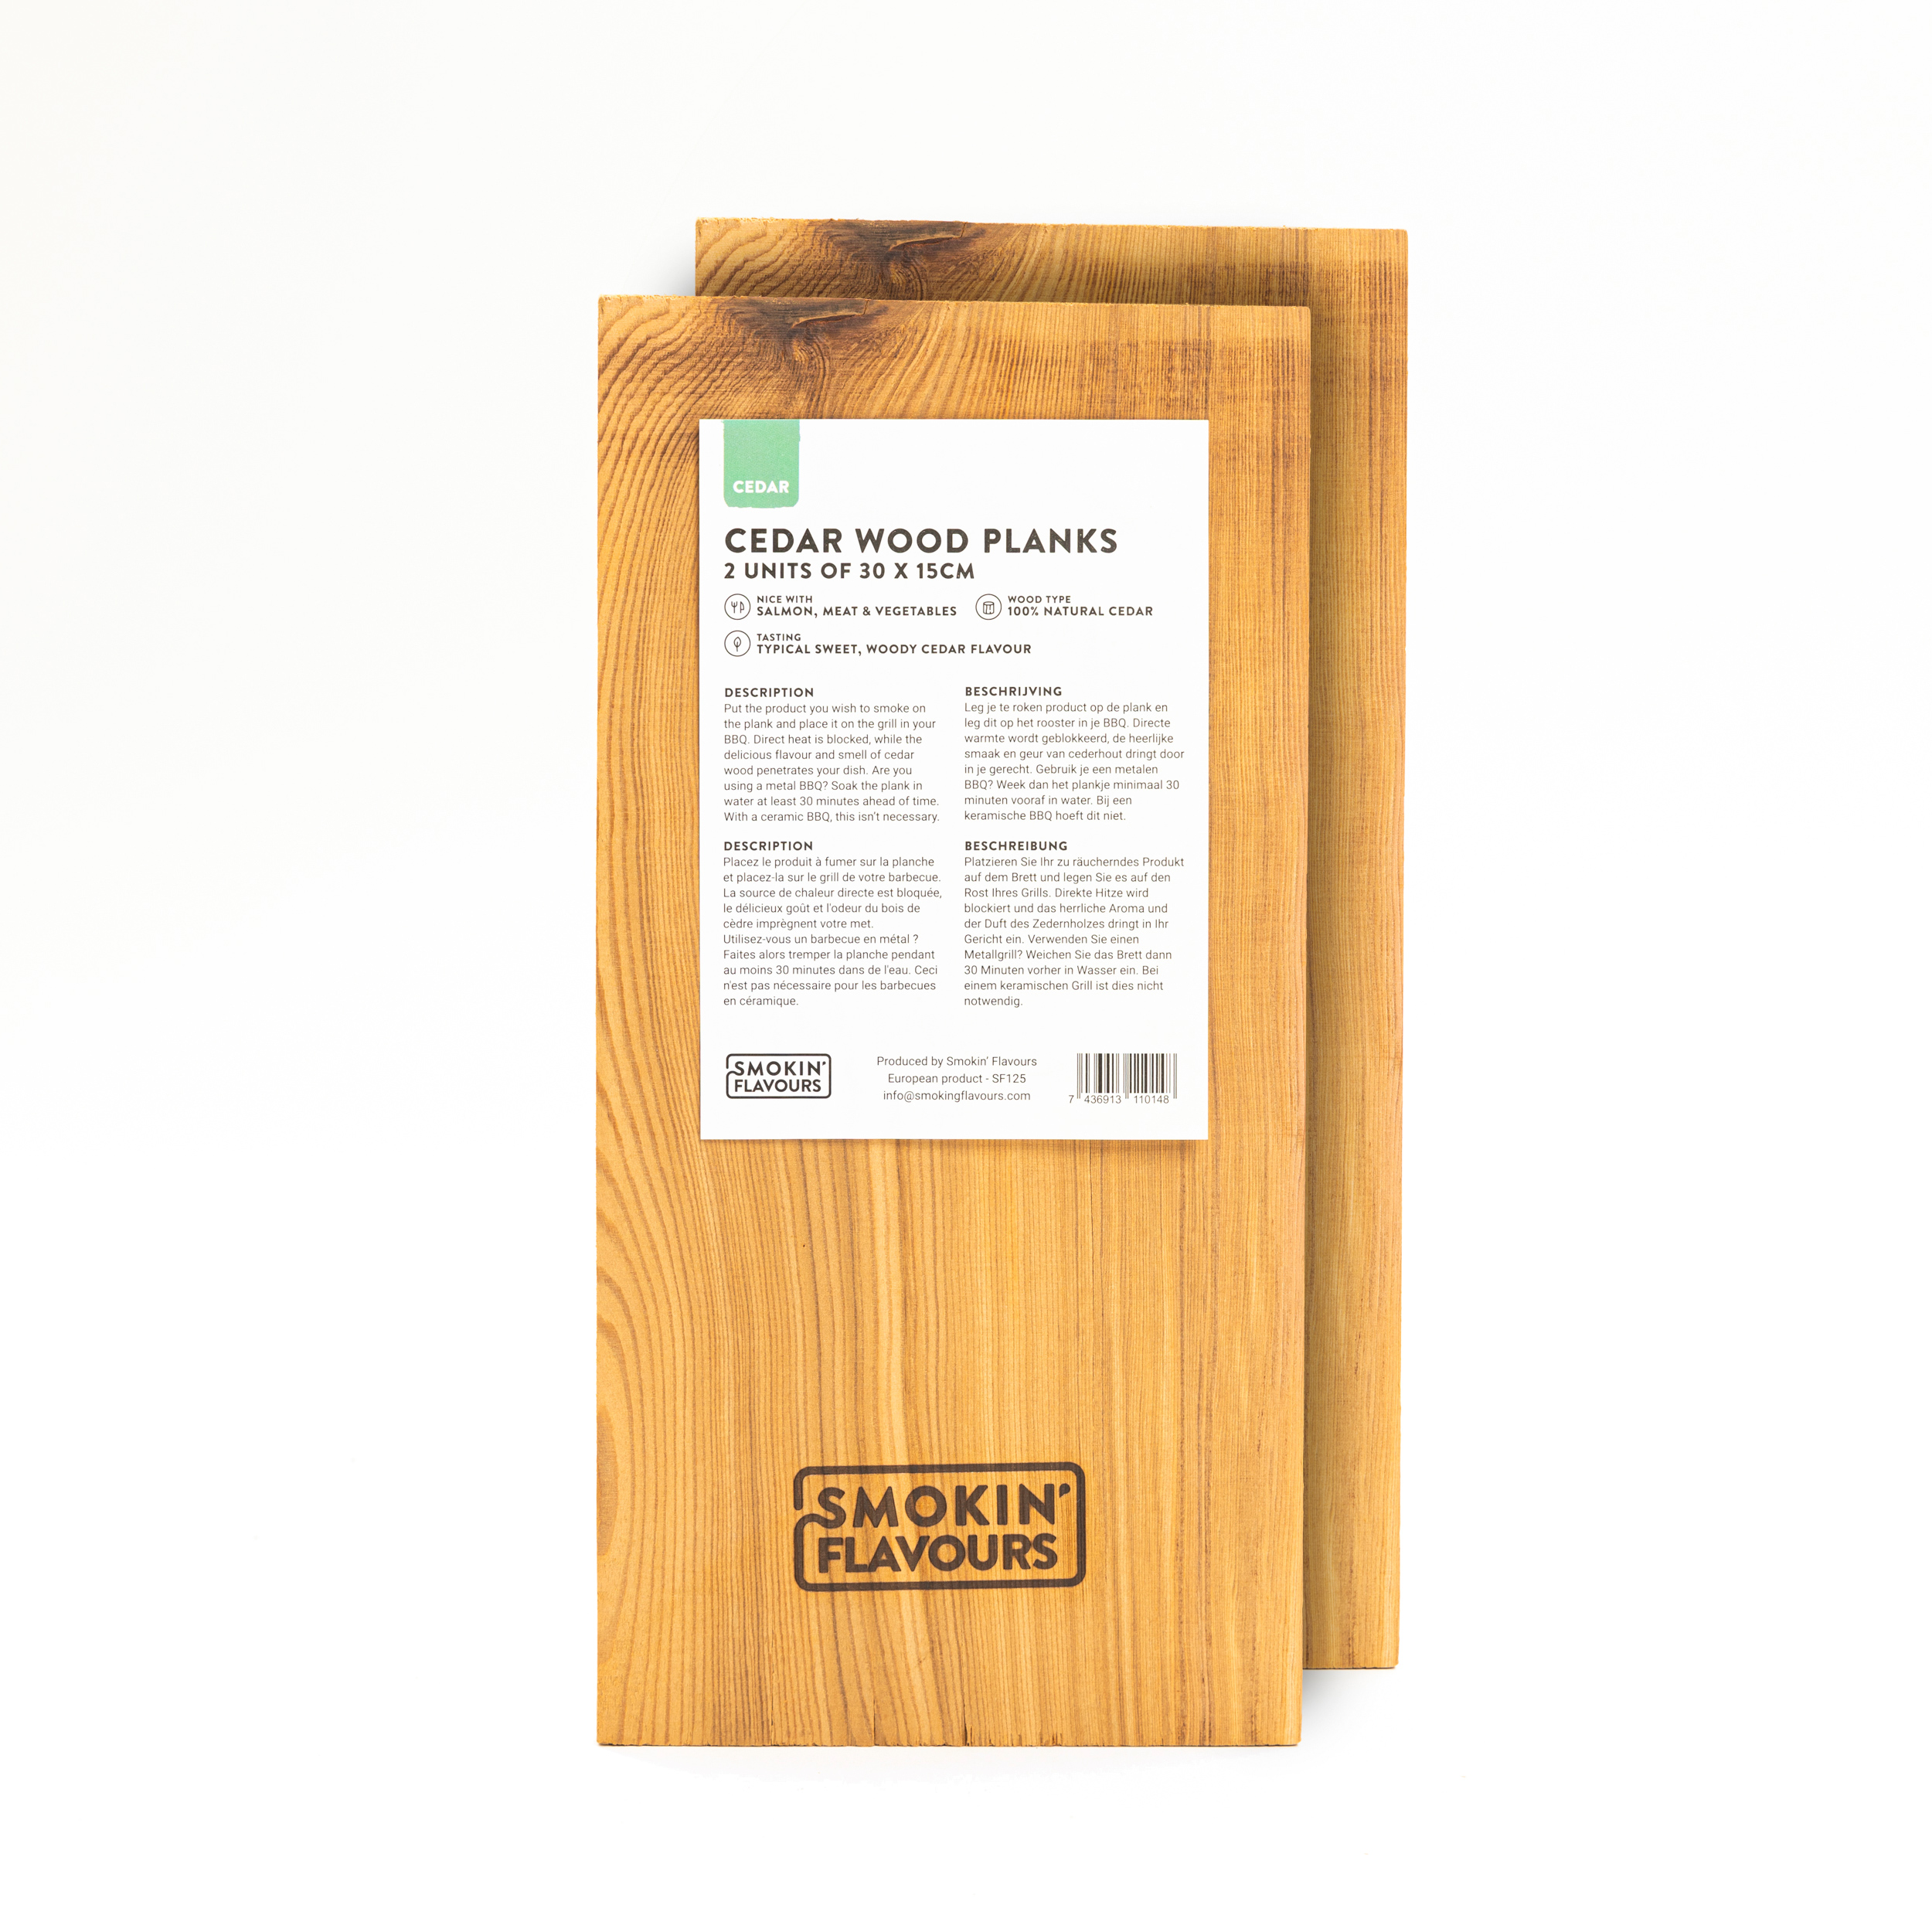 Installeren Voorstad spreken Cederhouten planken 2 stuks Smokin' Flavours - BBQ Experience Center